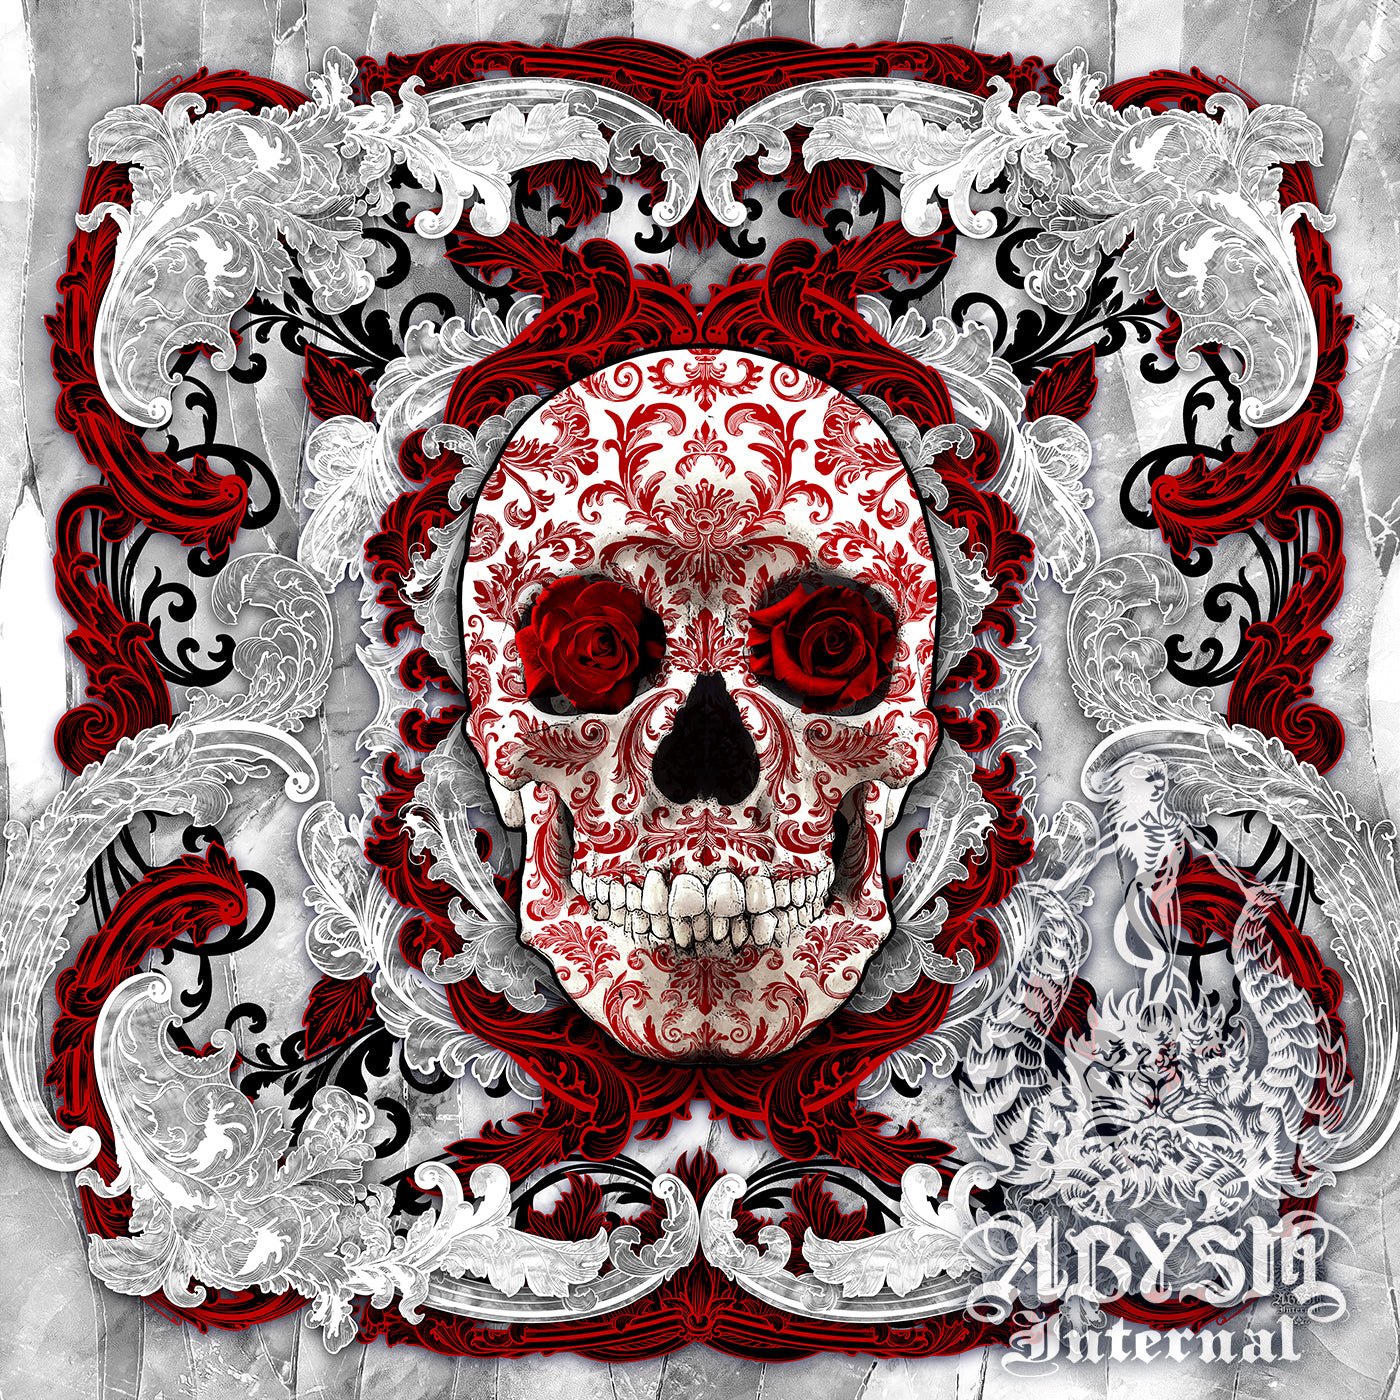 Skulls - Abysm Internal